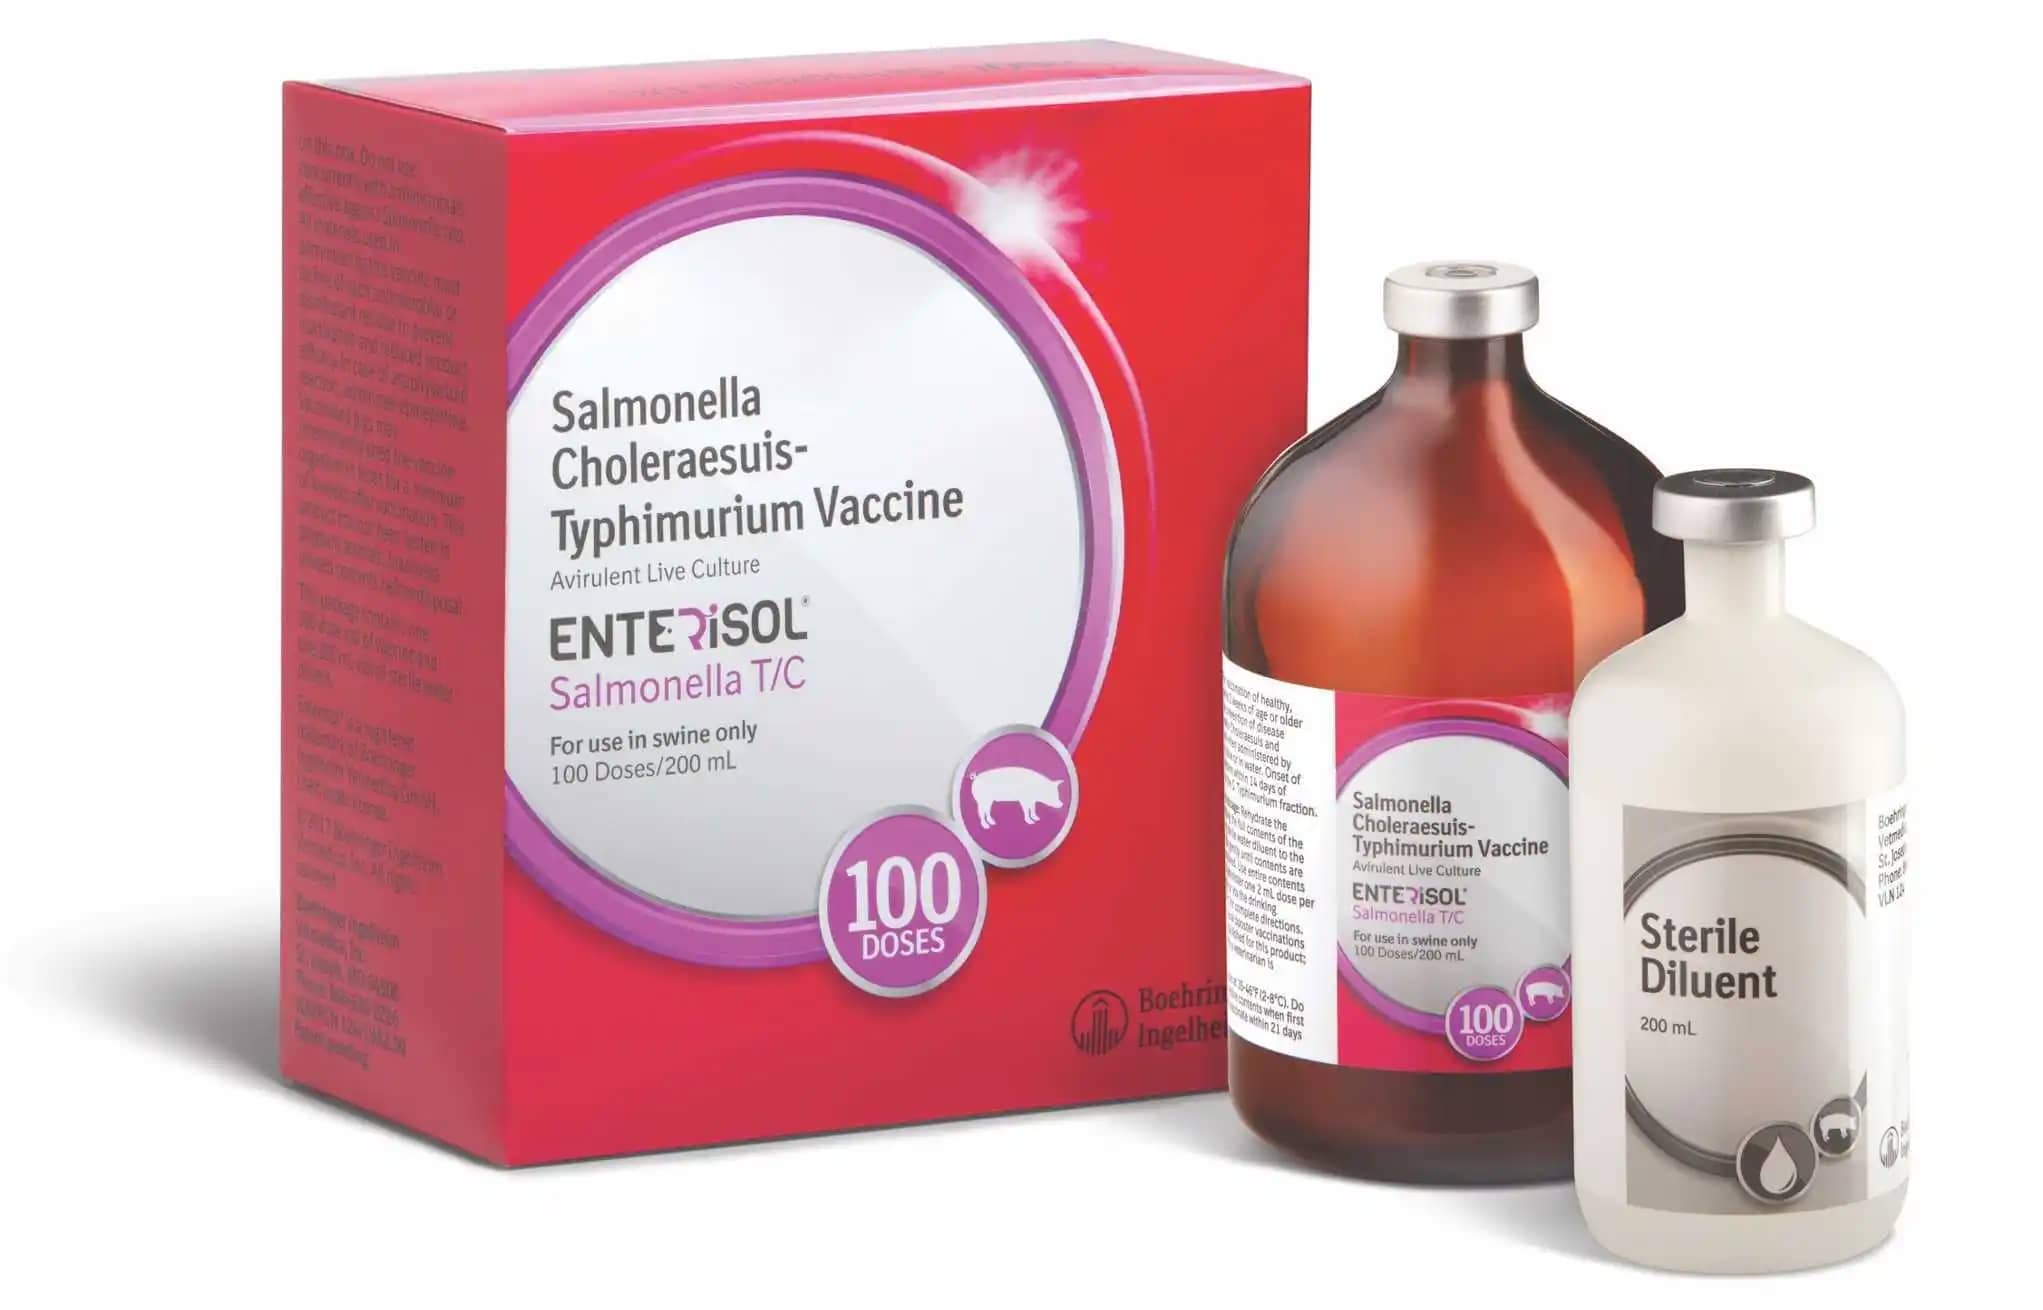 Enterisol Salmonella T/C